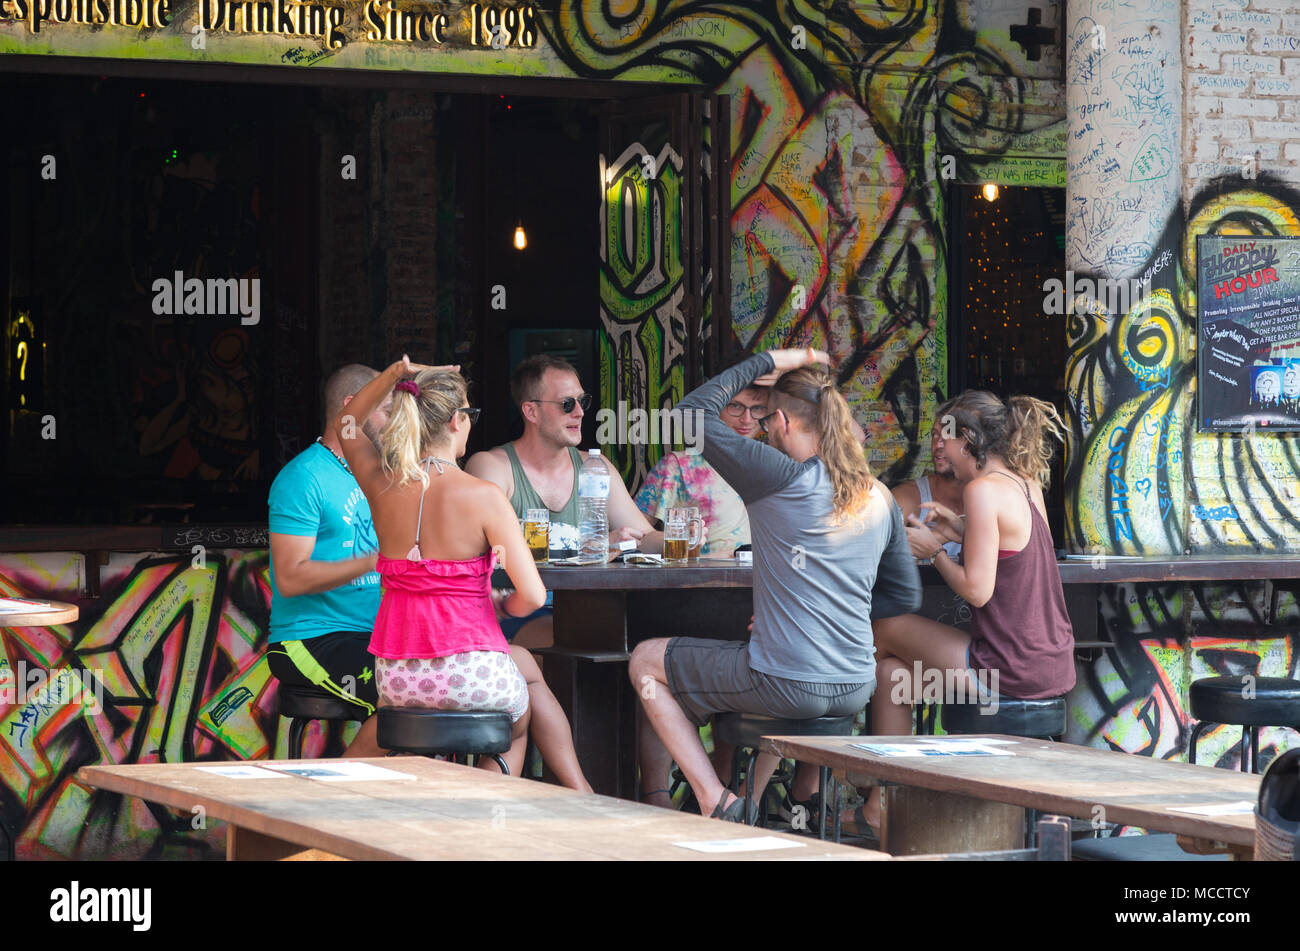 Menschen im Urlaub spielen trinken Spiele in einer Bar, Pub Street, Siem Reap, Kambodscha Asien Stockfoto